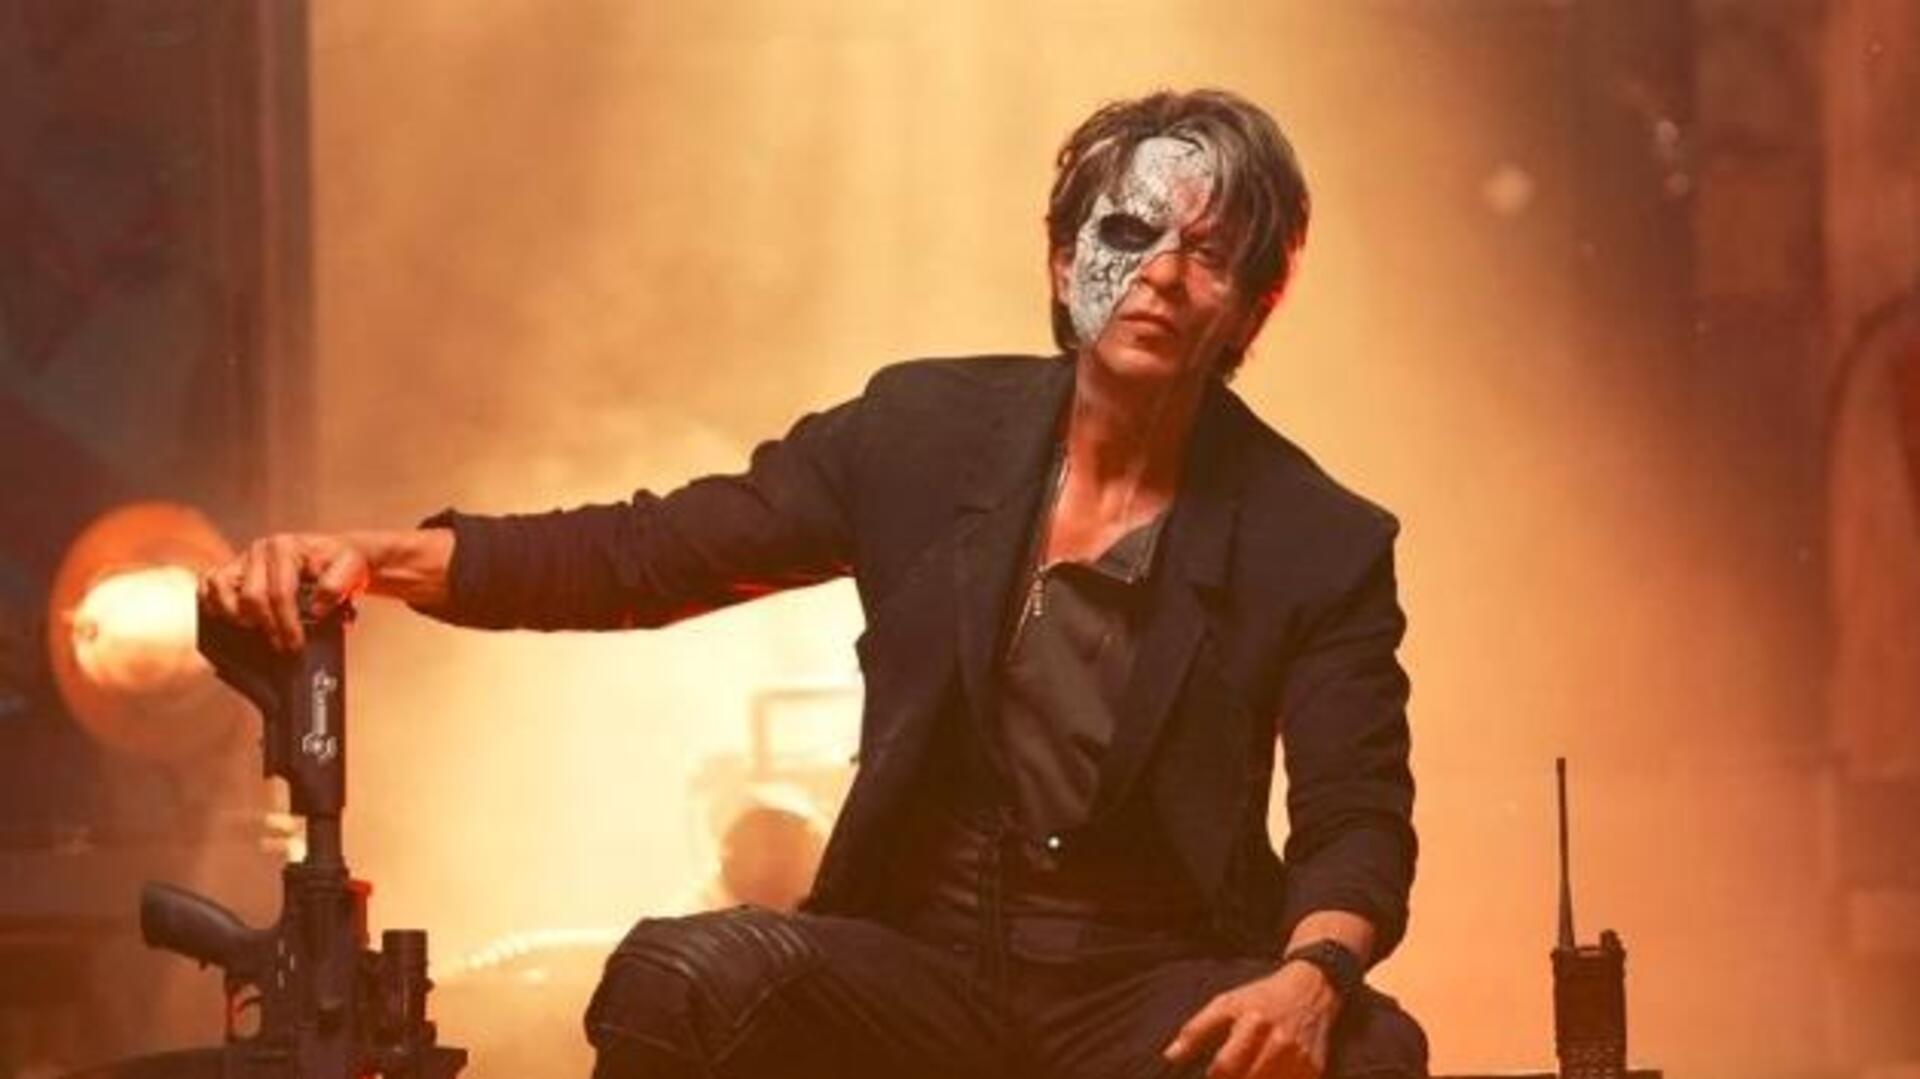 शाहरुख की फिल्म 'जवान' इस OTT प्लेटफॉर्म पर देगी दस्तक, इतने करोड़ रुपये में हुआ सौदा